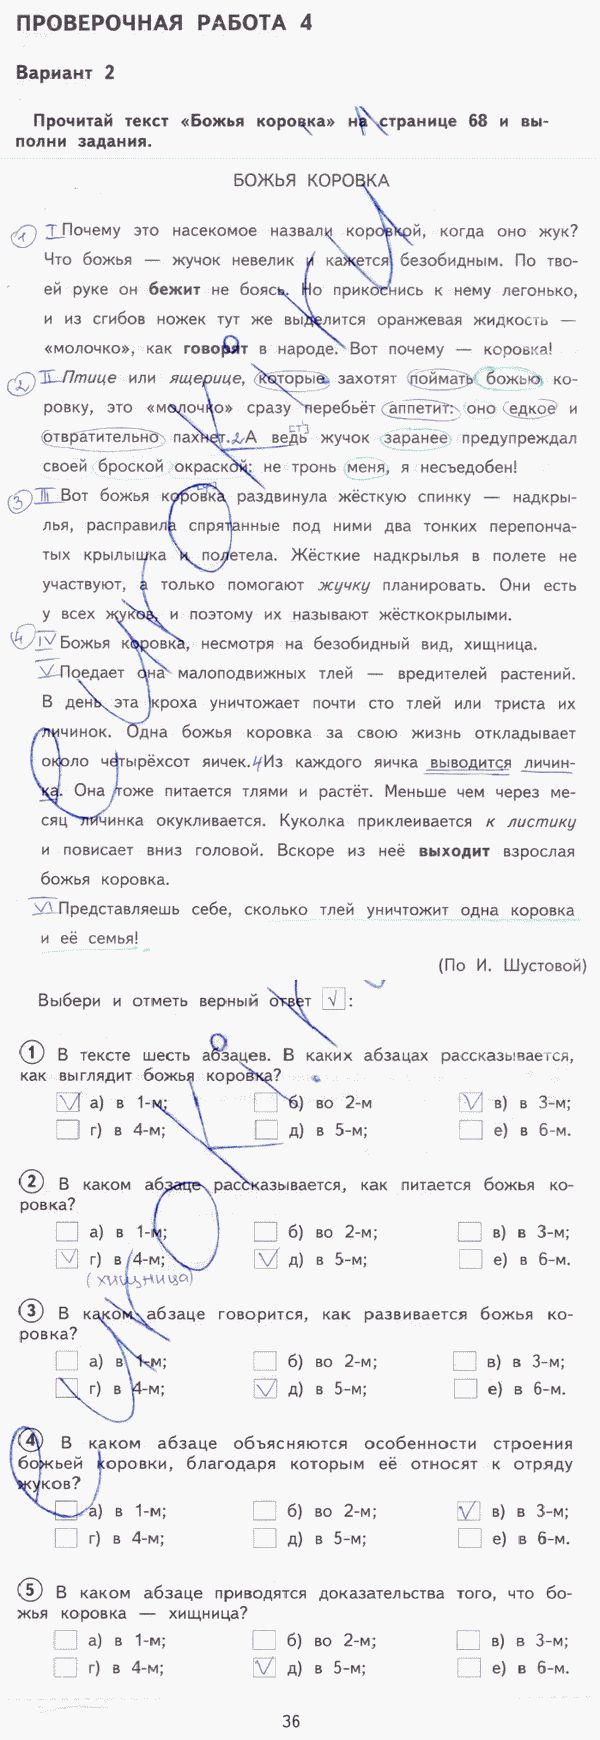 Тетрадь для проверочных работ по русскому языку 3 класс. ФГОС Лаврова Страница 36